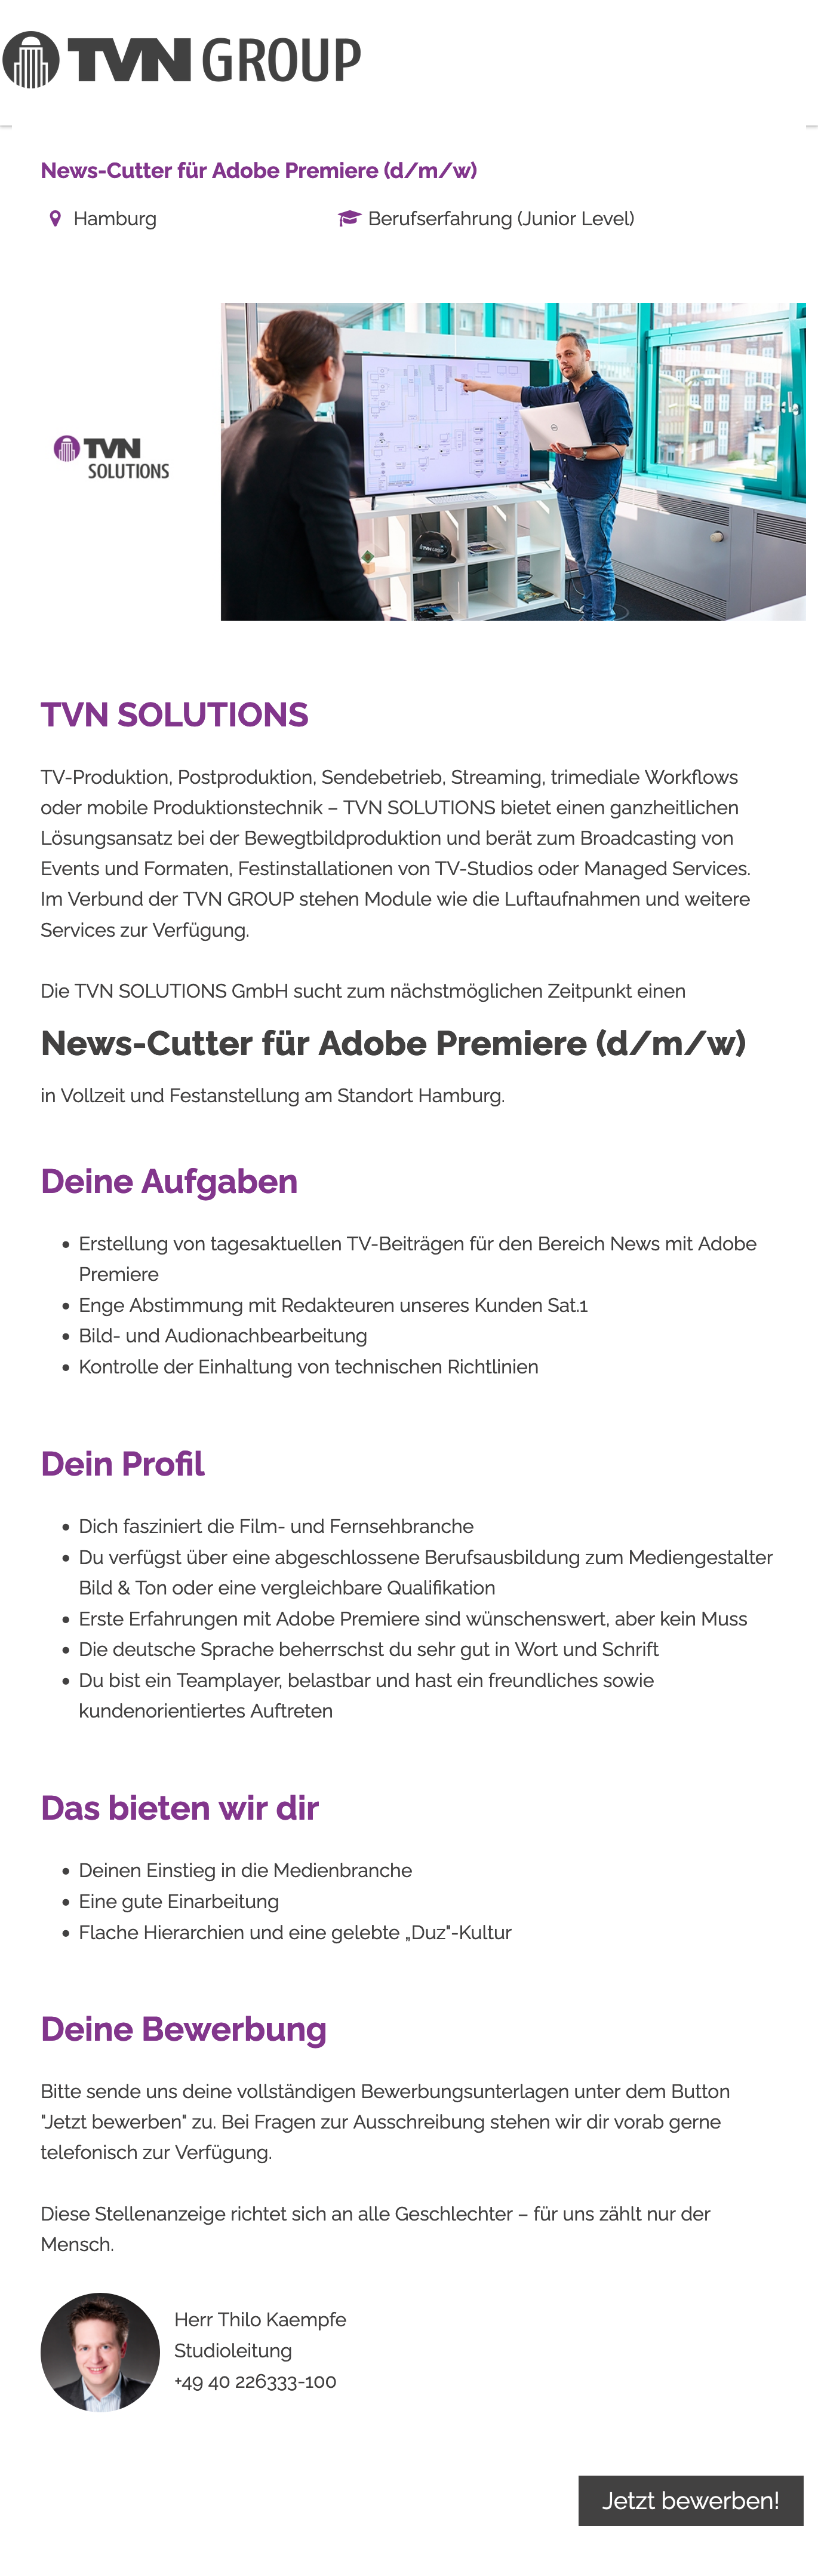 News-Cutter für Adobe Premiere (d/m/w)